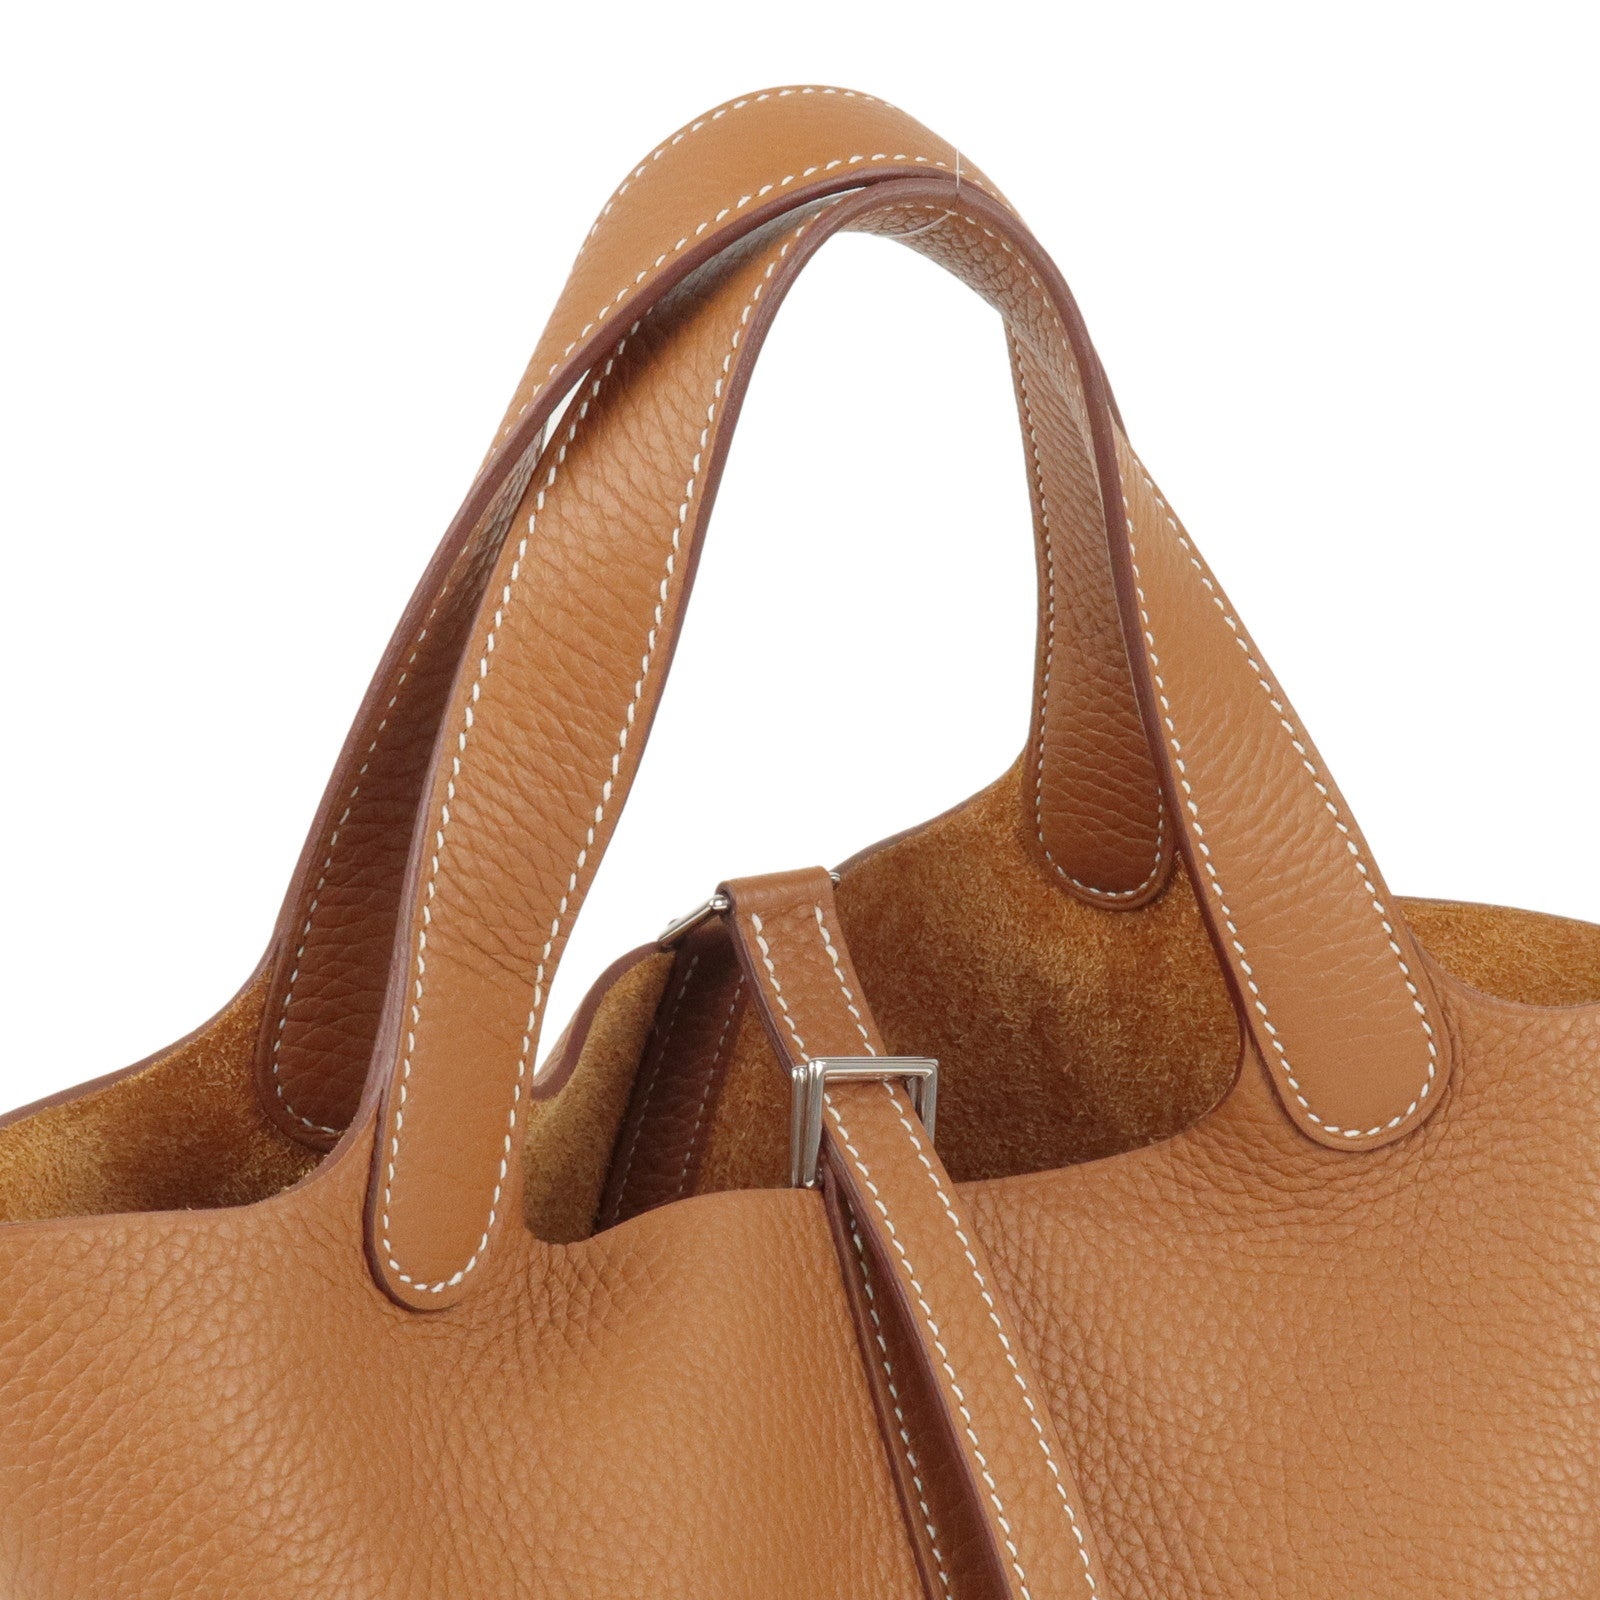 Hermes Picotin Taurillon Clemence Leather Handbag